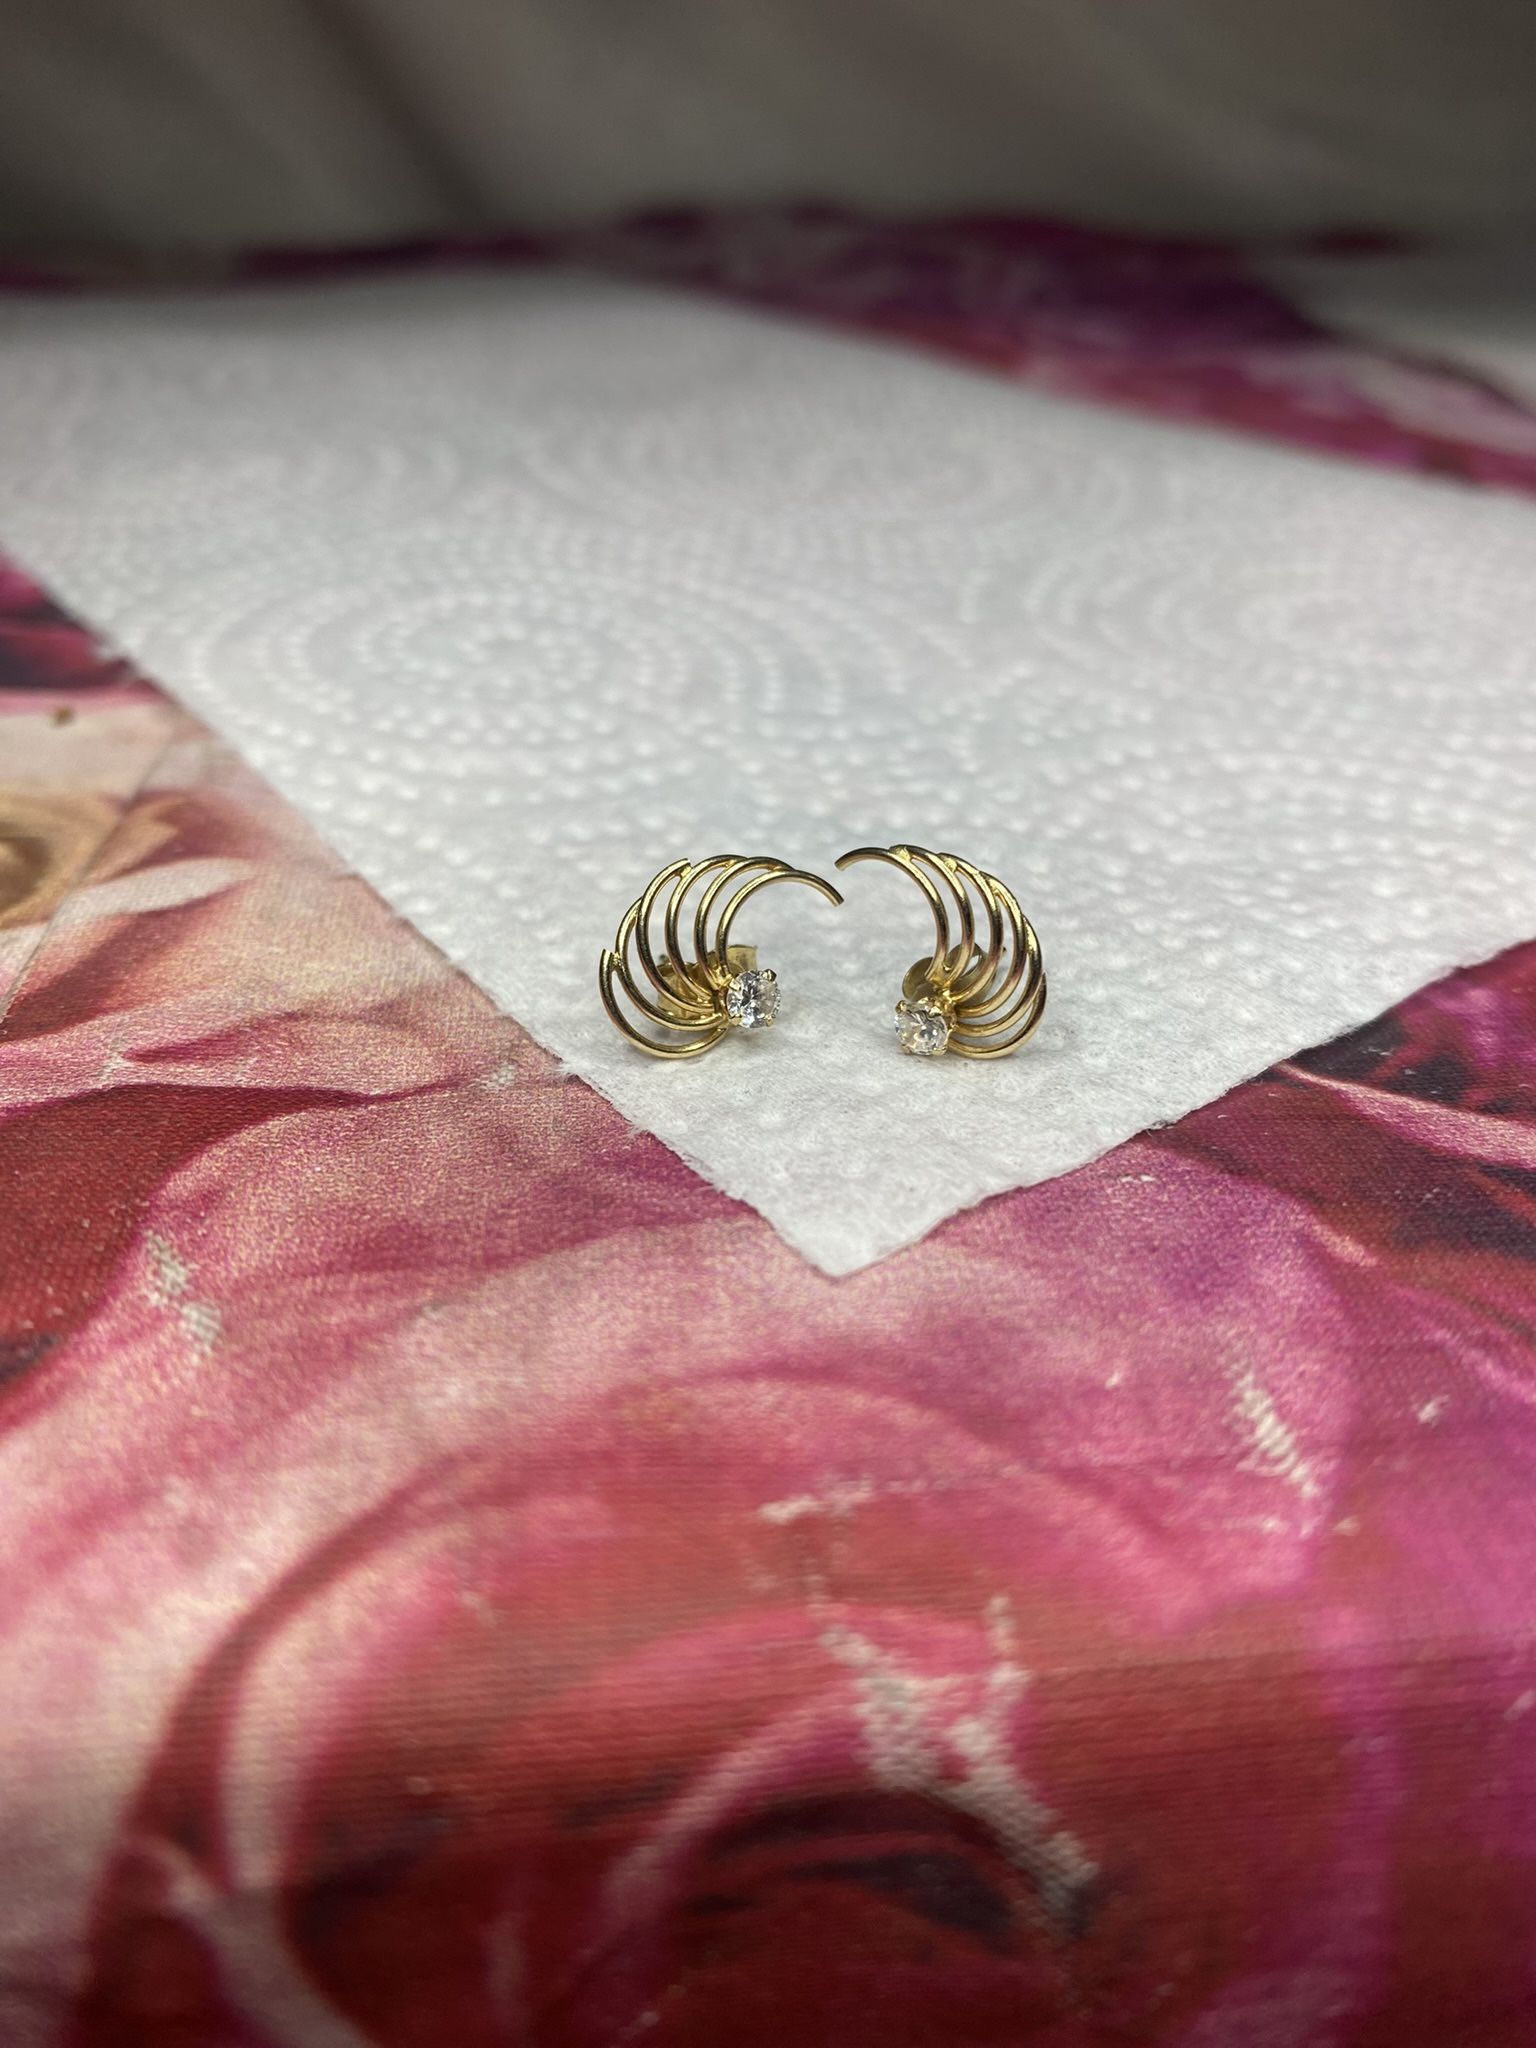 Vintage 14k Gold Faux Diamond Earring Jackets 